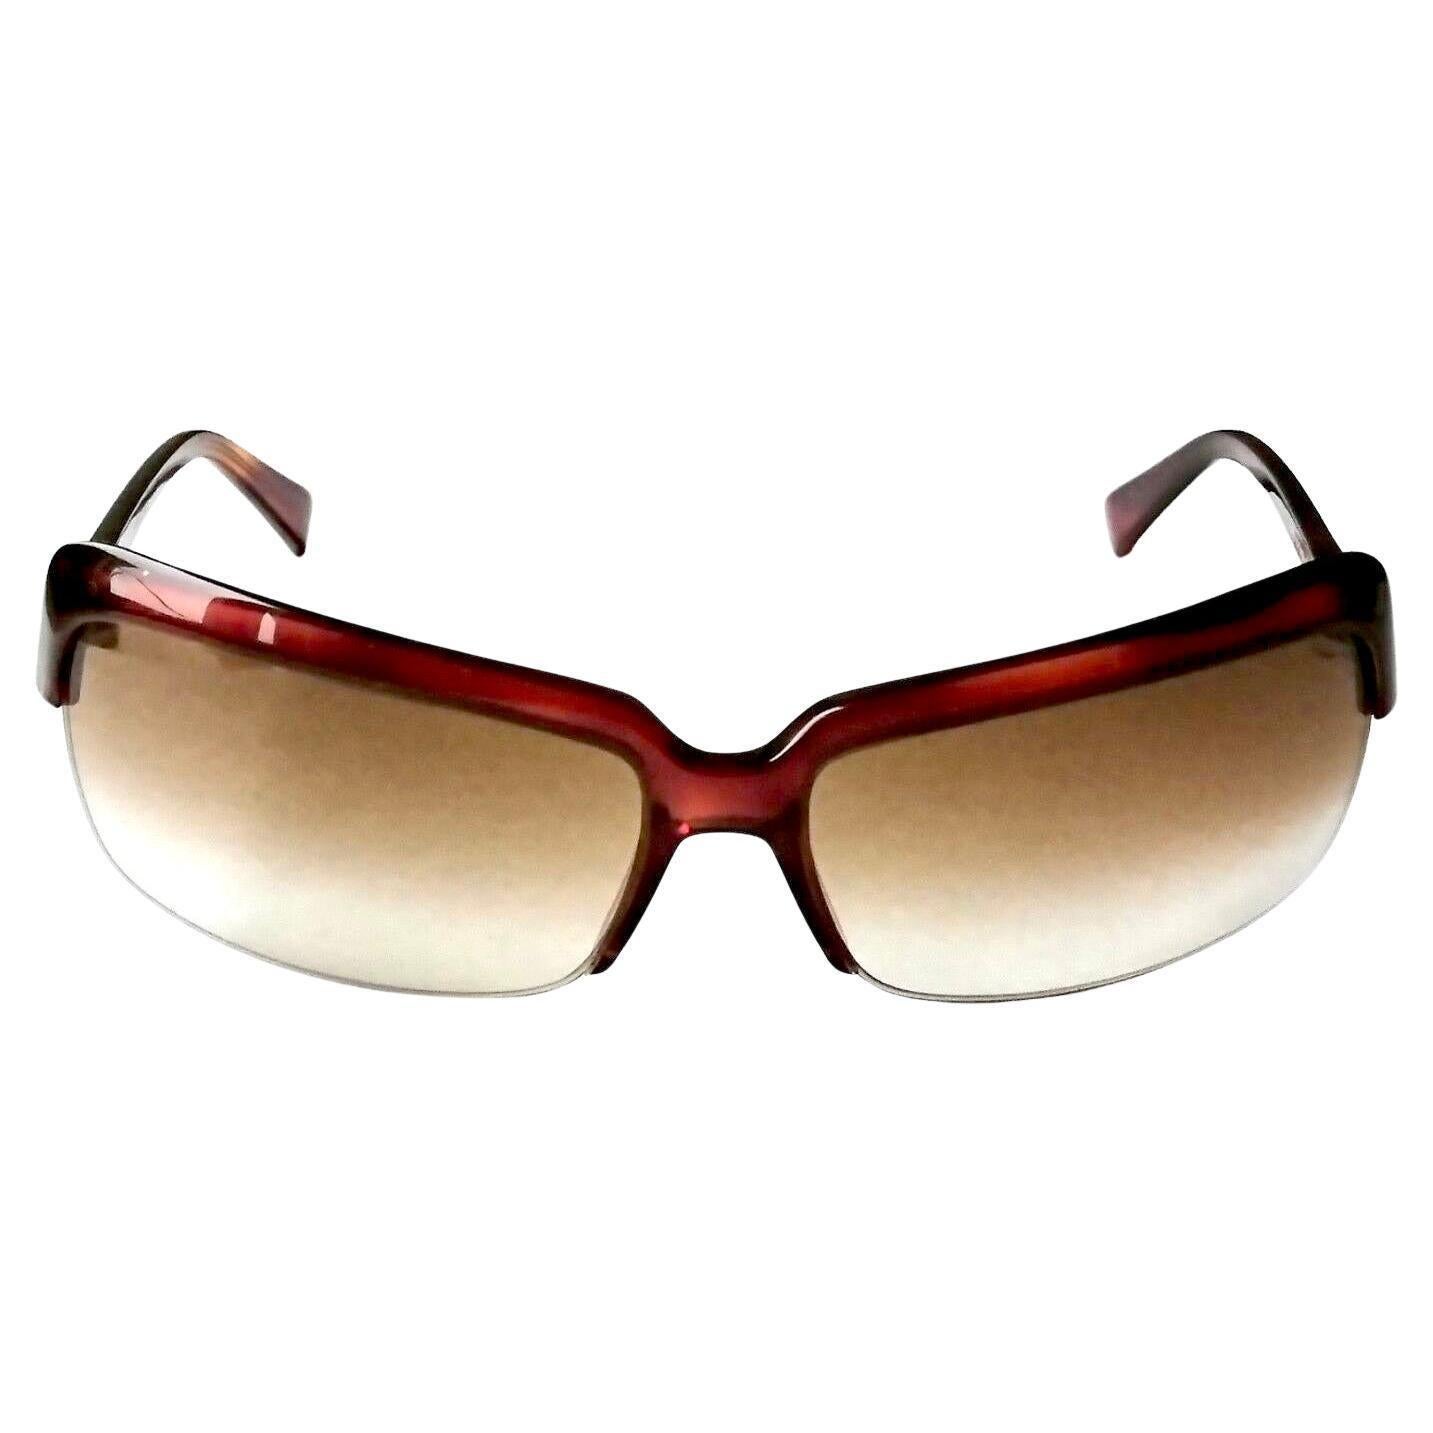 La Perla New sunglasses art. 063M col. 0710  For Sale 2